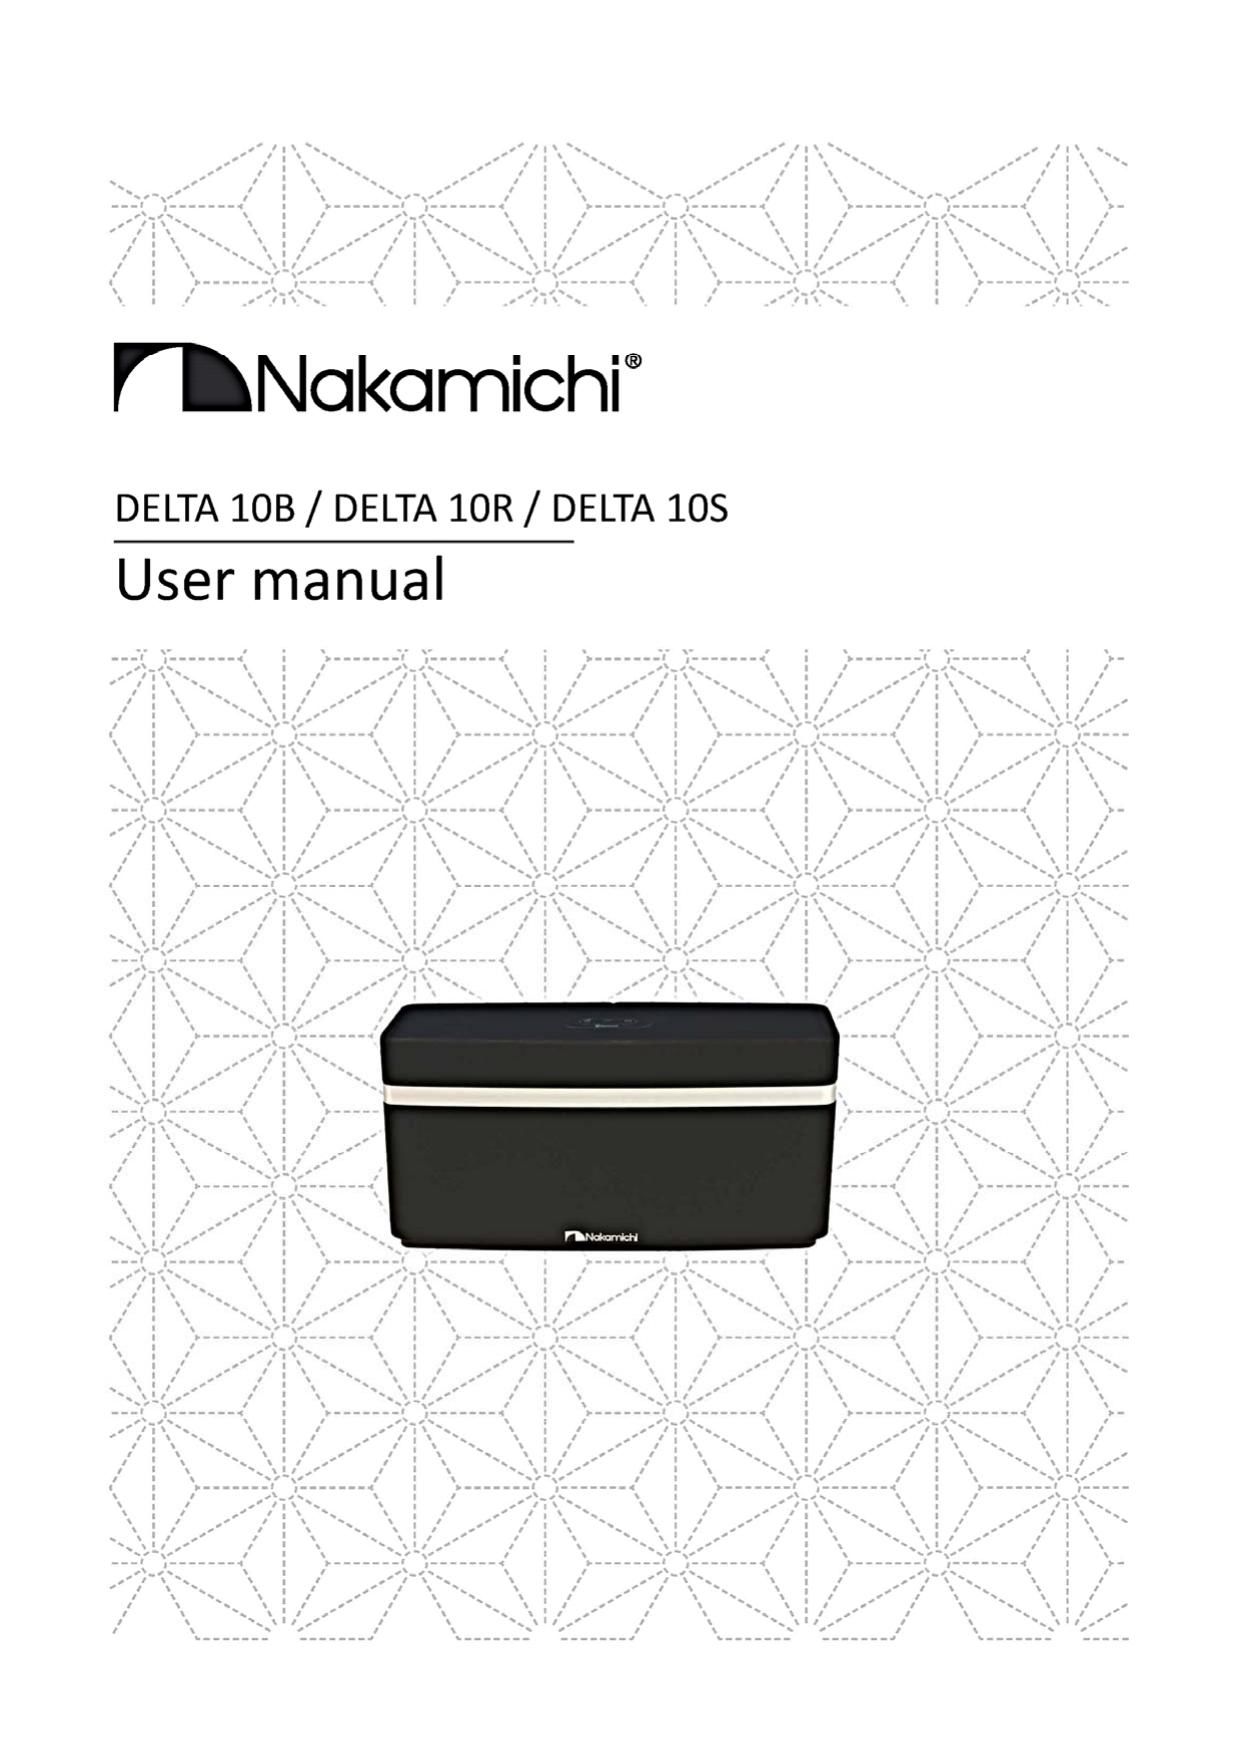 Nakamichi DELTA 10 B Owners Manual